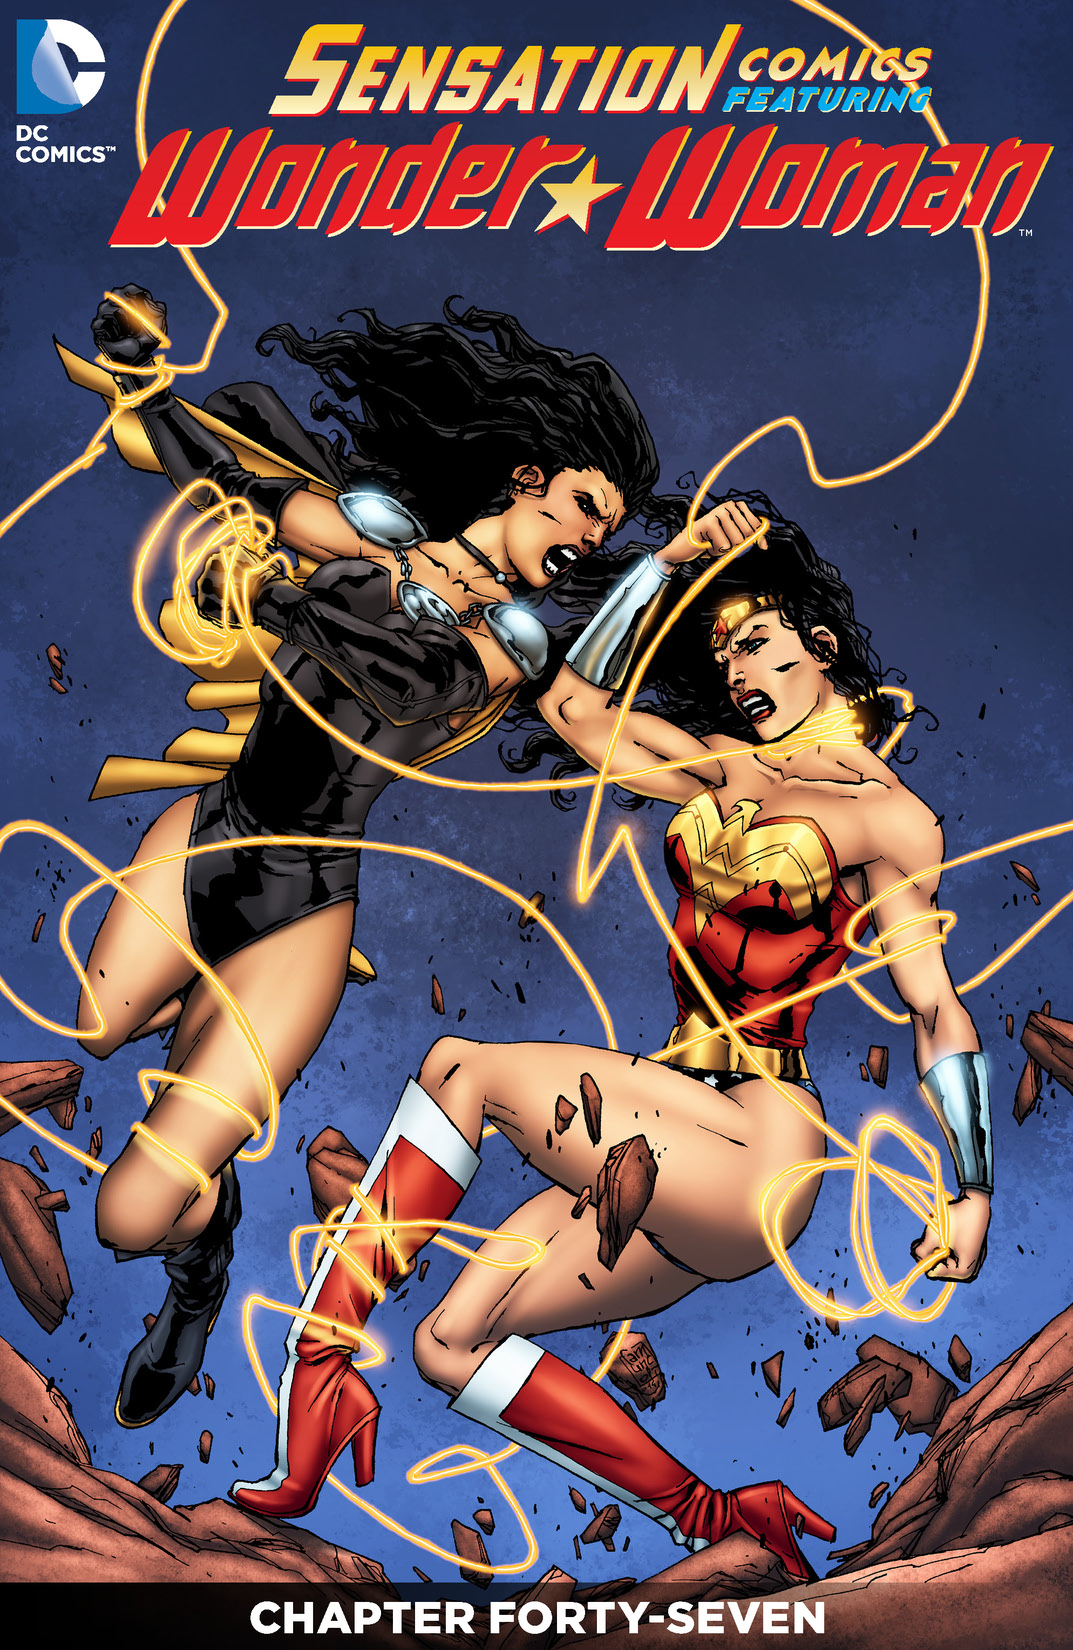 Sensation Comics Featuring Wonder Woman #47 preview images